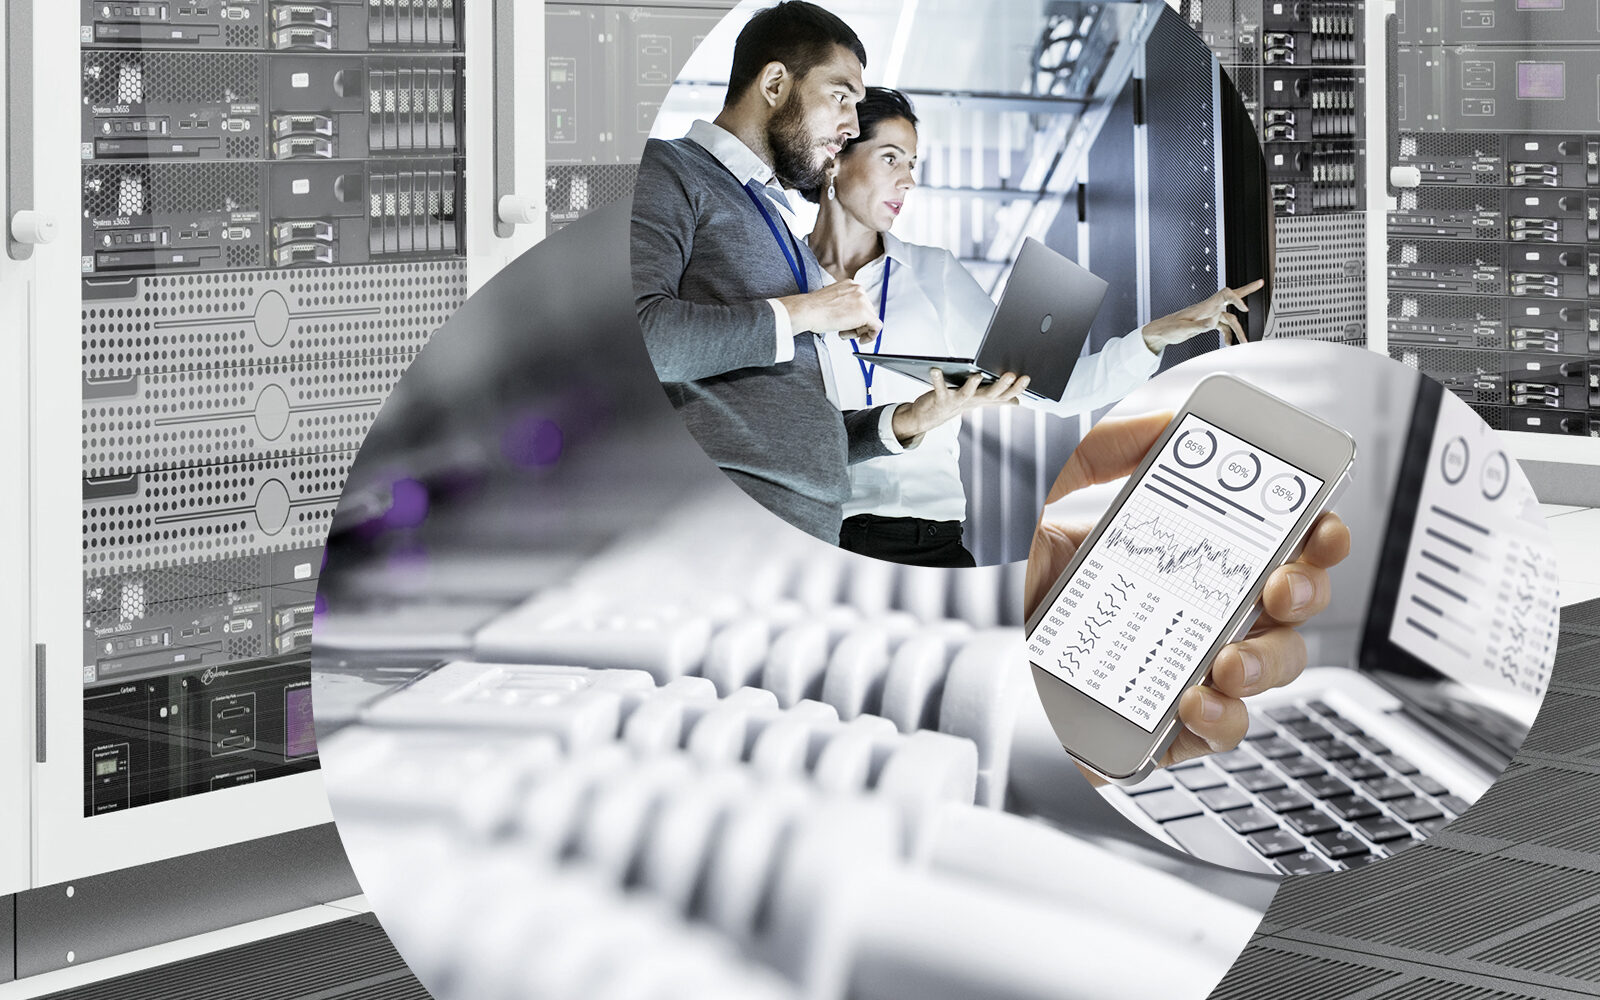 Bild aus dem Bereich Business Analytics und SAP BusinessObjects zeigt einen Mann und eine Frau in einem Rechenzentrum, LAN Kabel sowie ein BI-Dashboard auf einem Handy